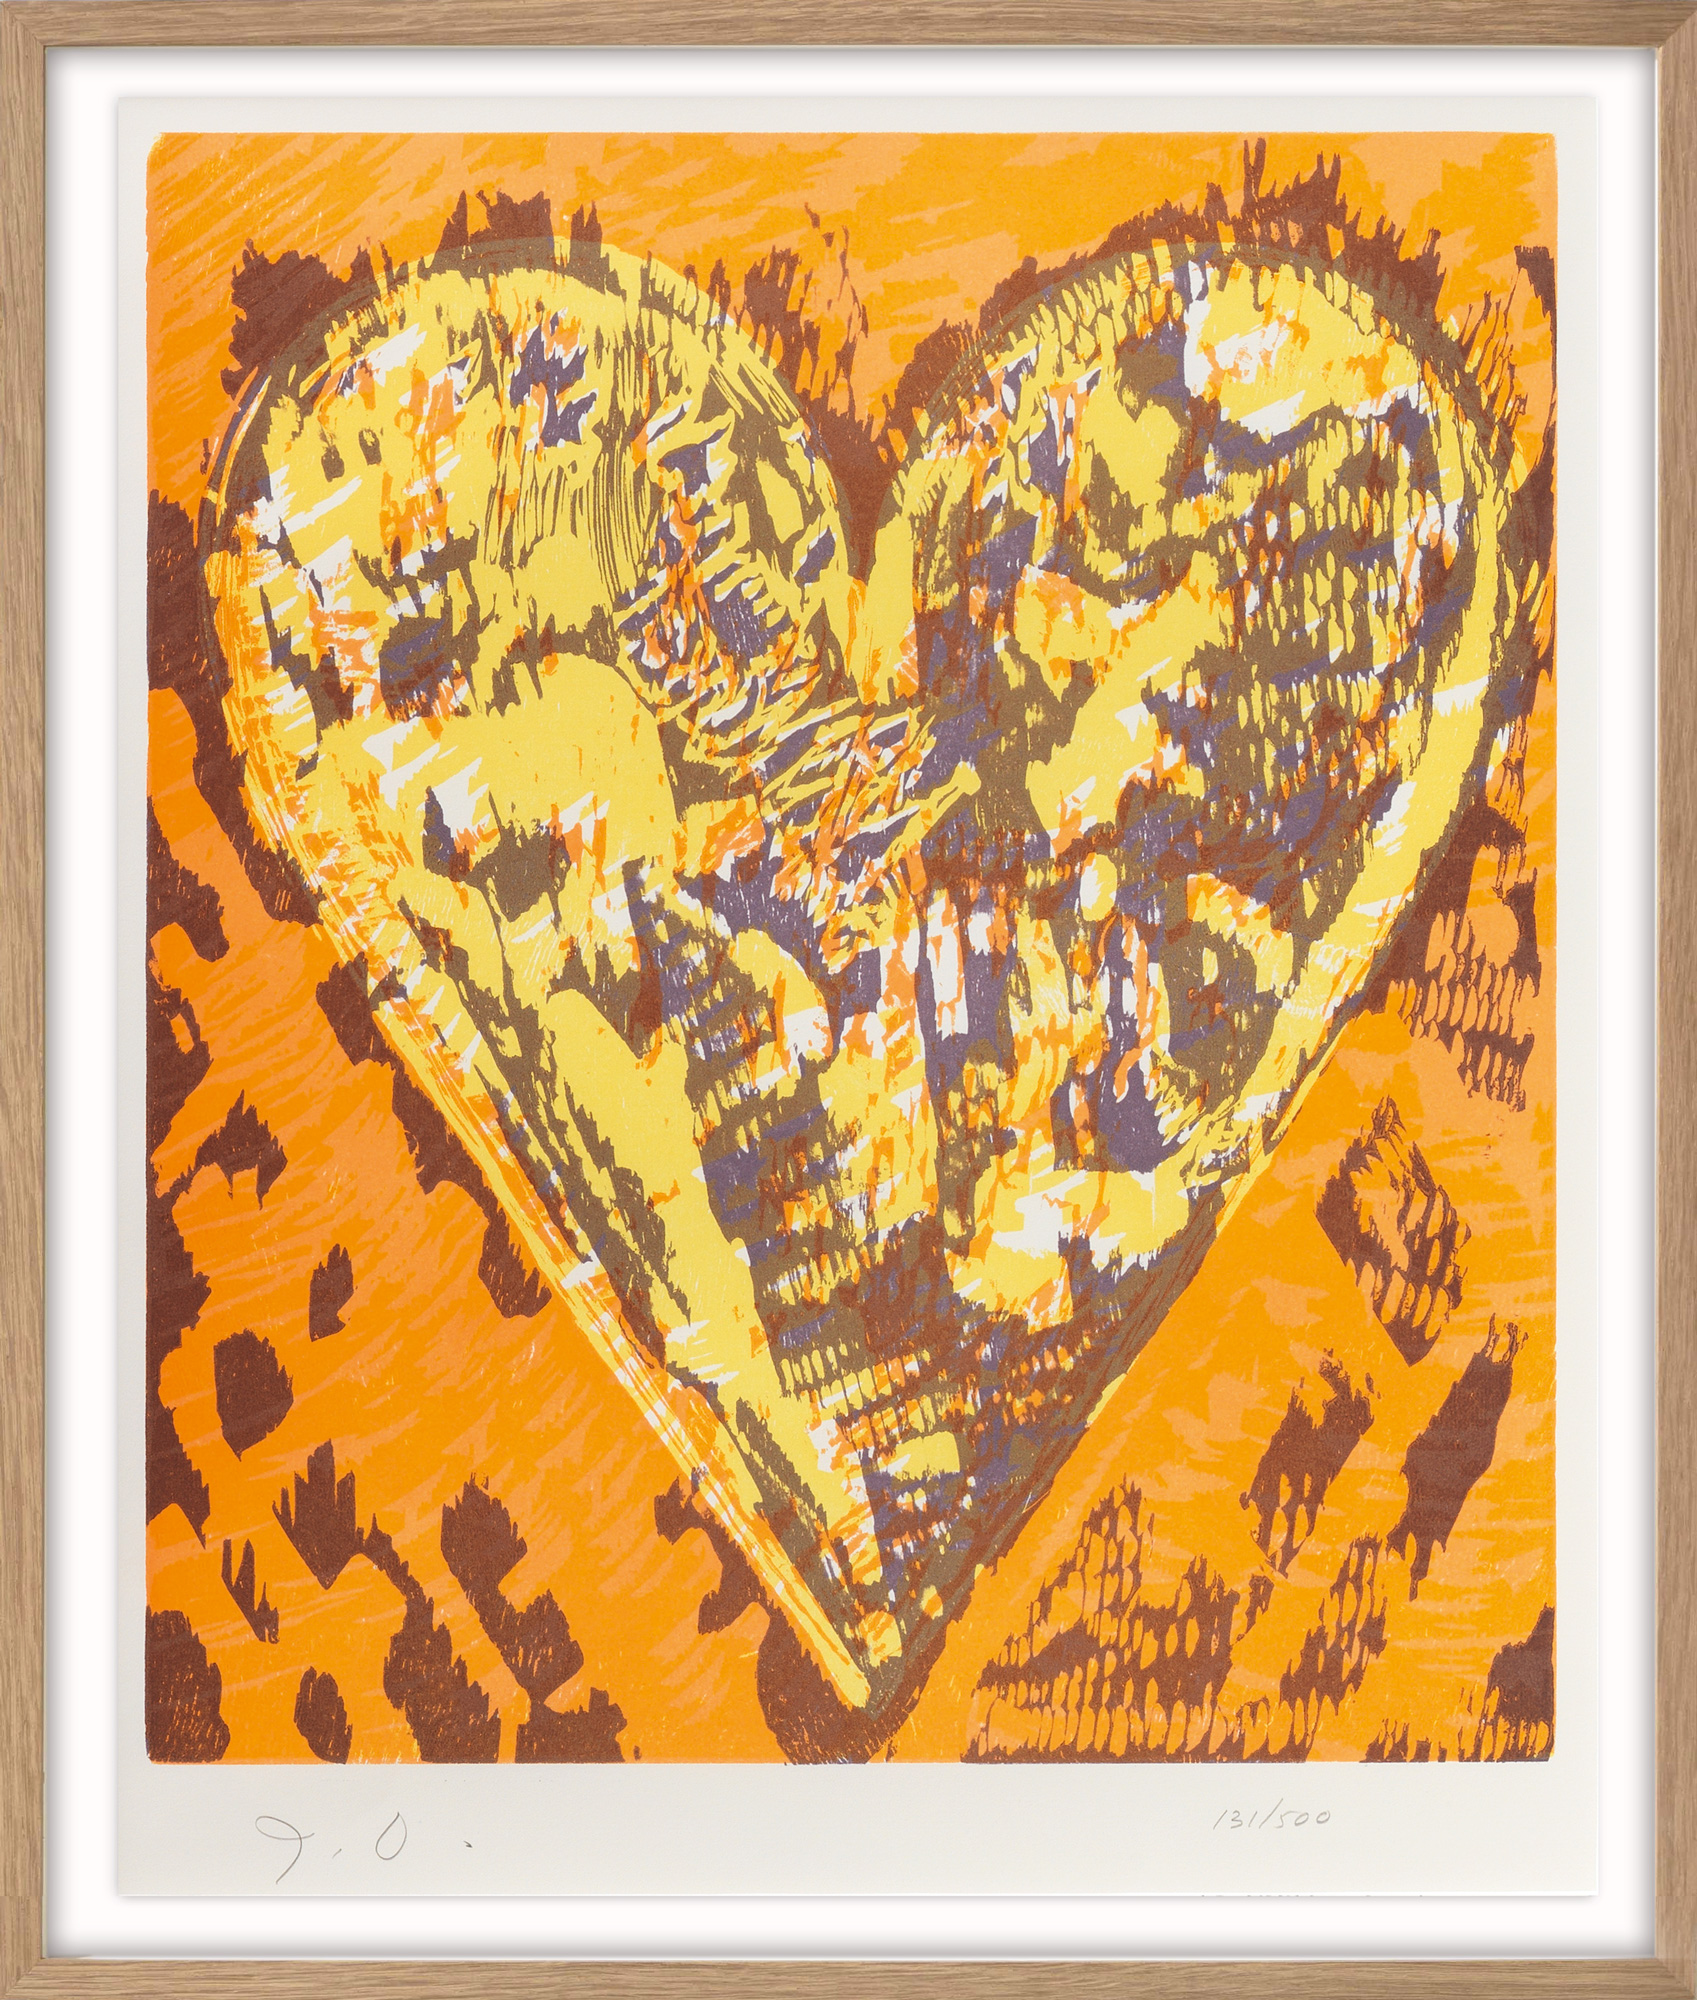 Bild "Heart" (1993) von Jim Dine